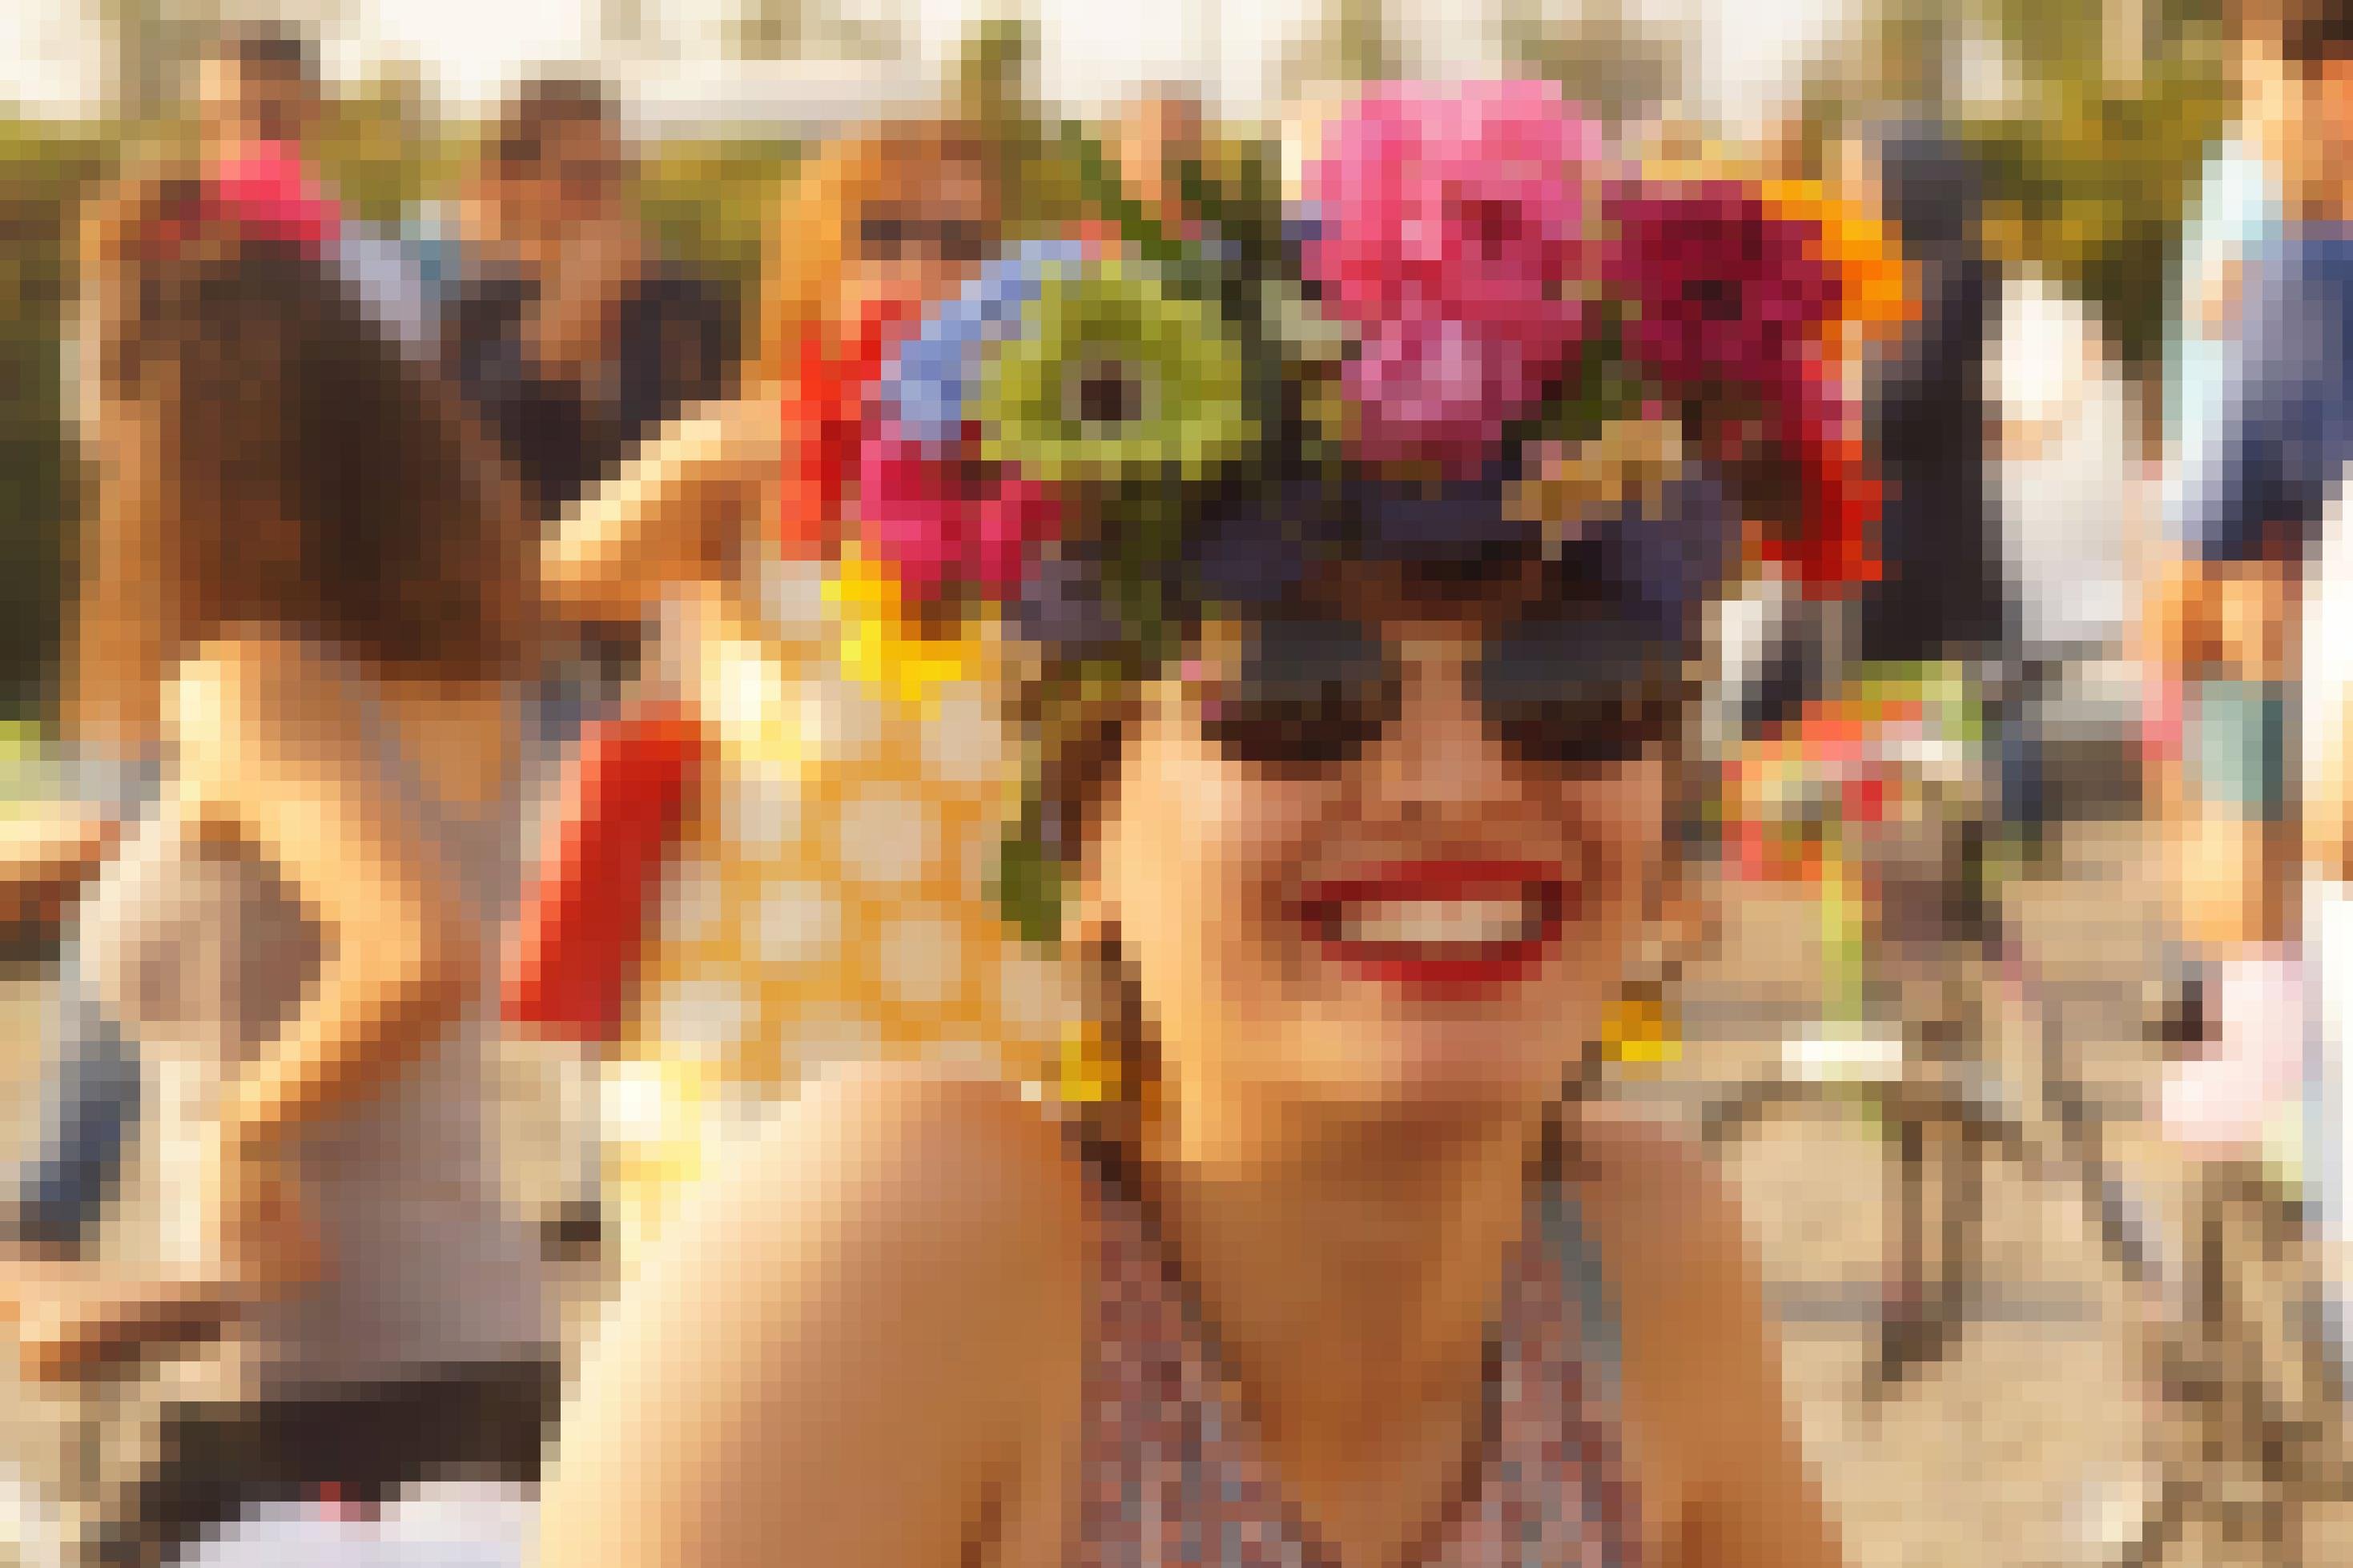 Die Portraitaufnahme zeigt eine Frau, die eine Sonnenbrille trägt und in die Kamera lacht. Sie hat sich ein Tuch um den Kopf gebunden und sich bunte Blumen ins Haar gesteckt. Im Hintergrund stehen weitere Teilnehmer der Ausfahrt.